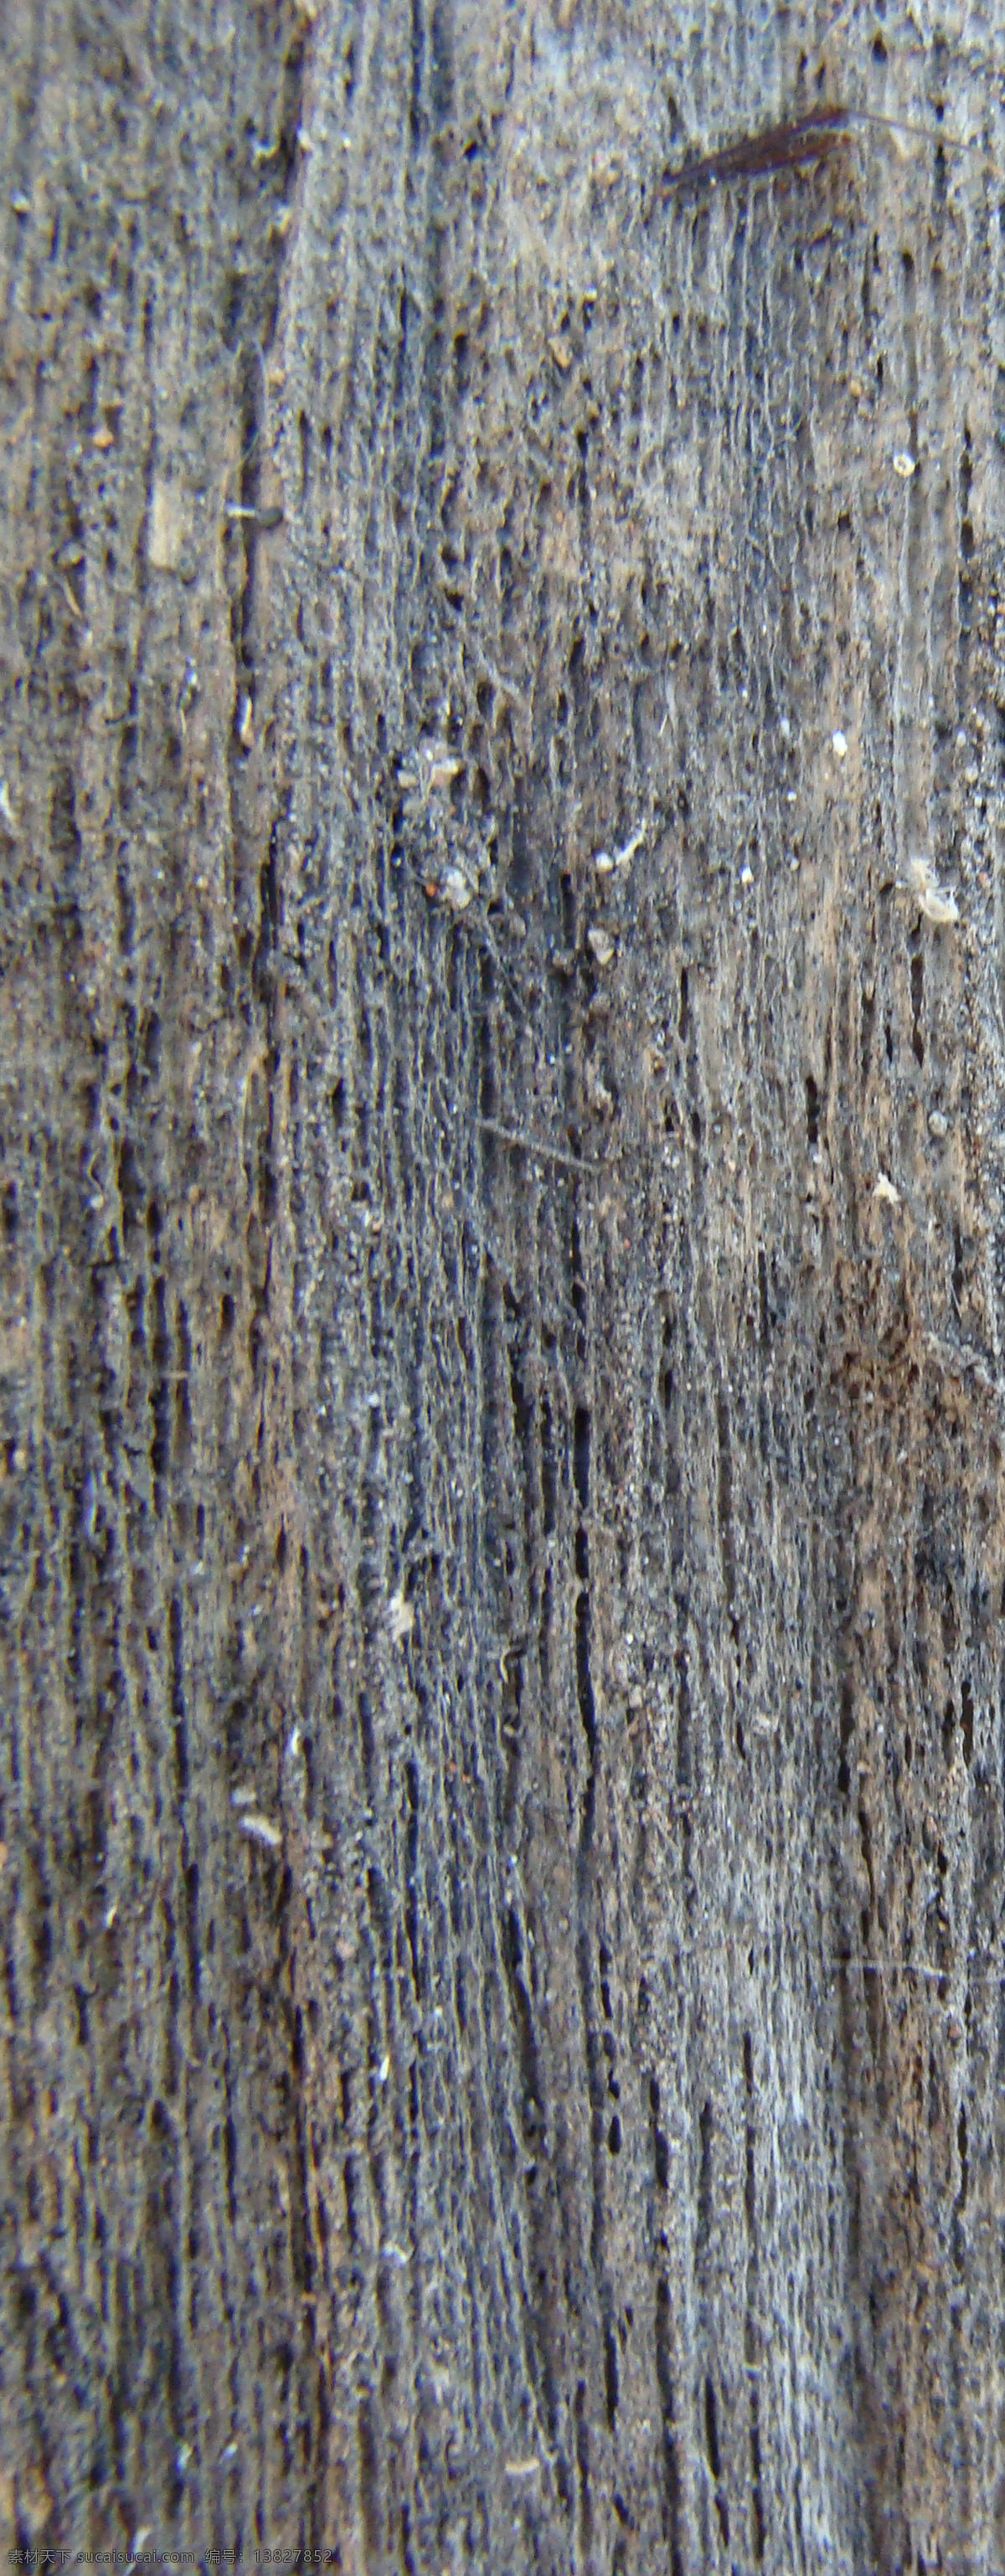 高 分辨率 木材 纹理 包 背景 创意 高分辨率 黑暗 免费 清洁 时尚的 现代的 独特的 原始的 设计新的 hd 木制的 树皮 墙体板 psd源文件